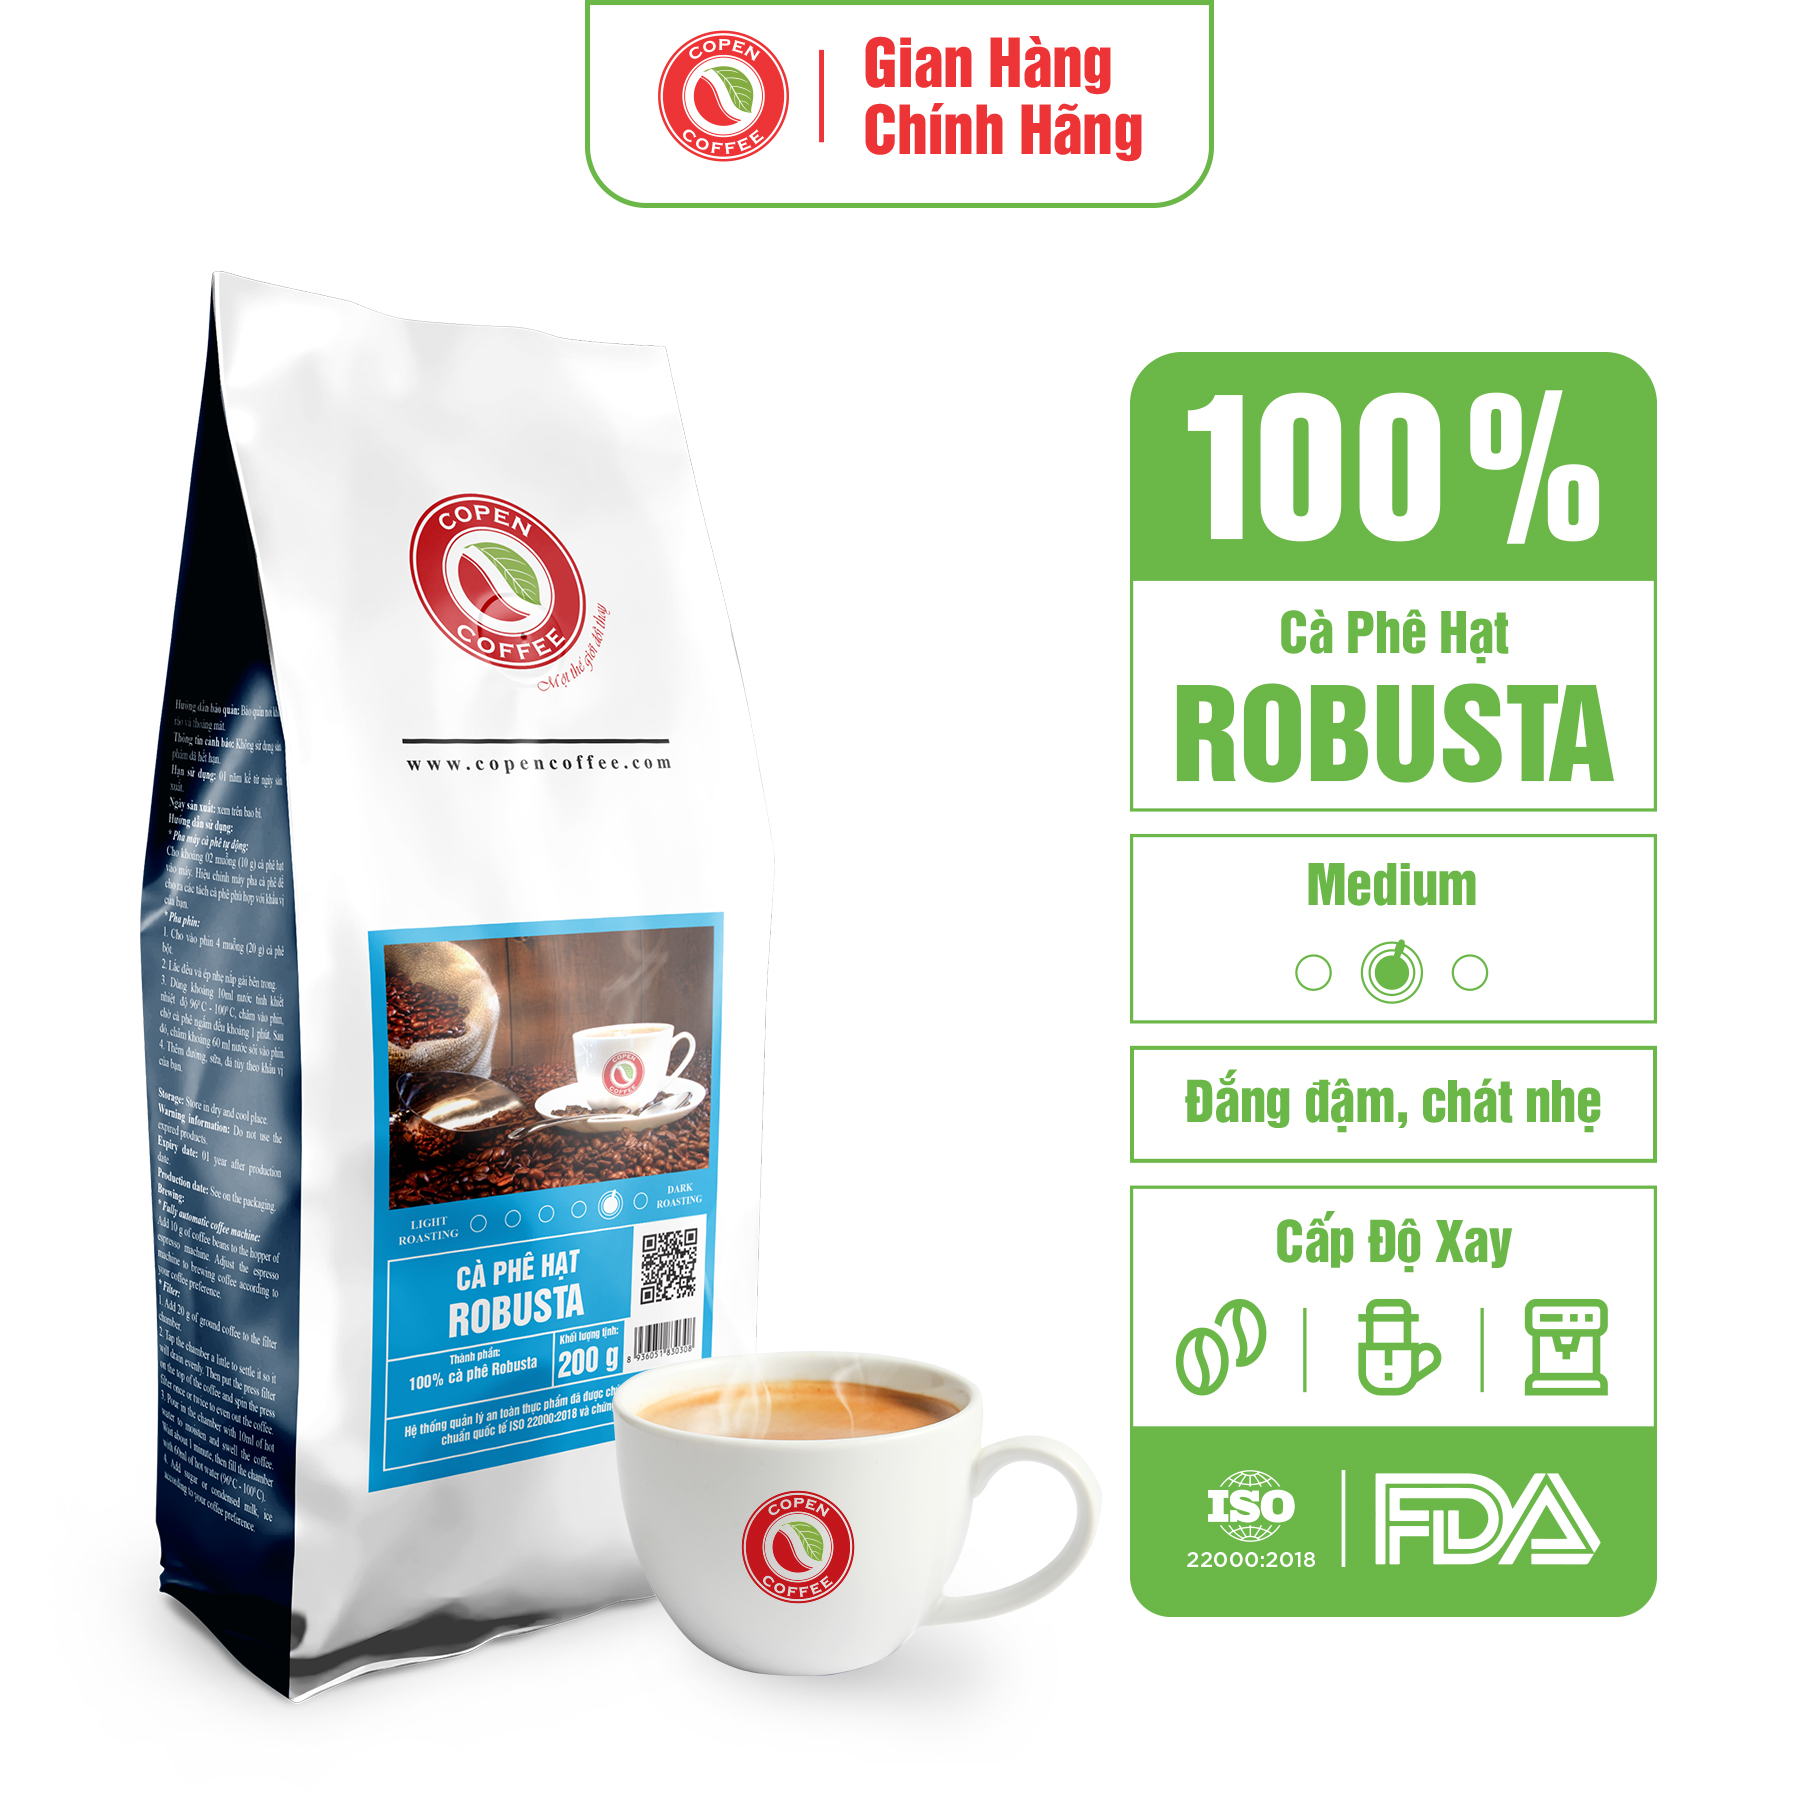 Cà phê hạt Robusta nguyên chất rang mộc - Copen Coffee - Gu truyền thống đậm đà, thơm nồng - Gói 200g